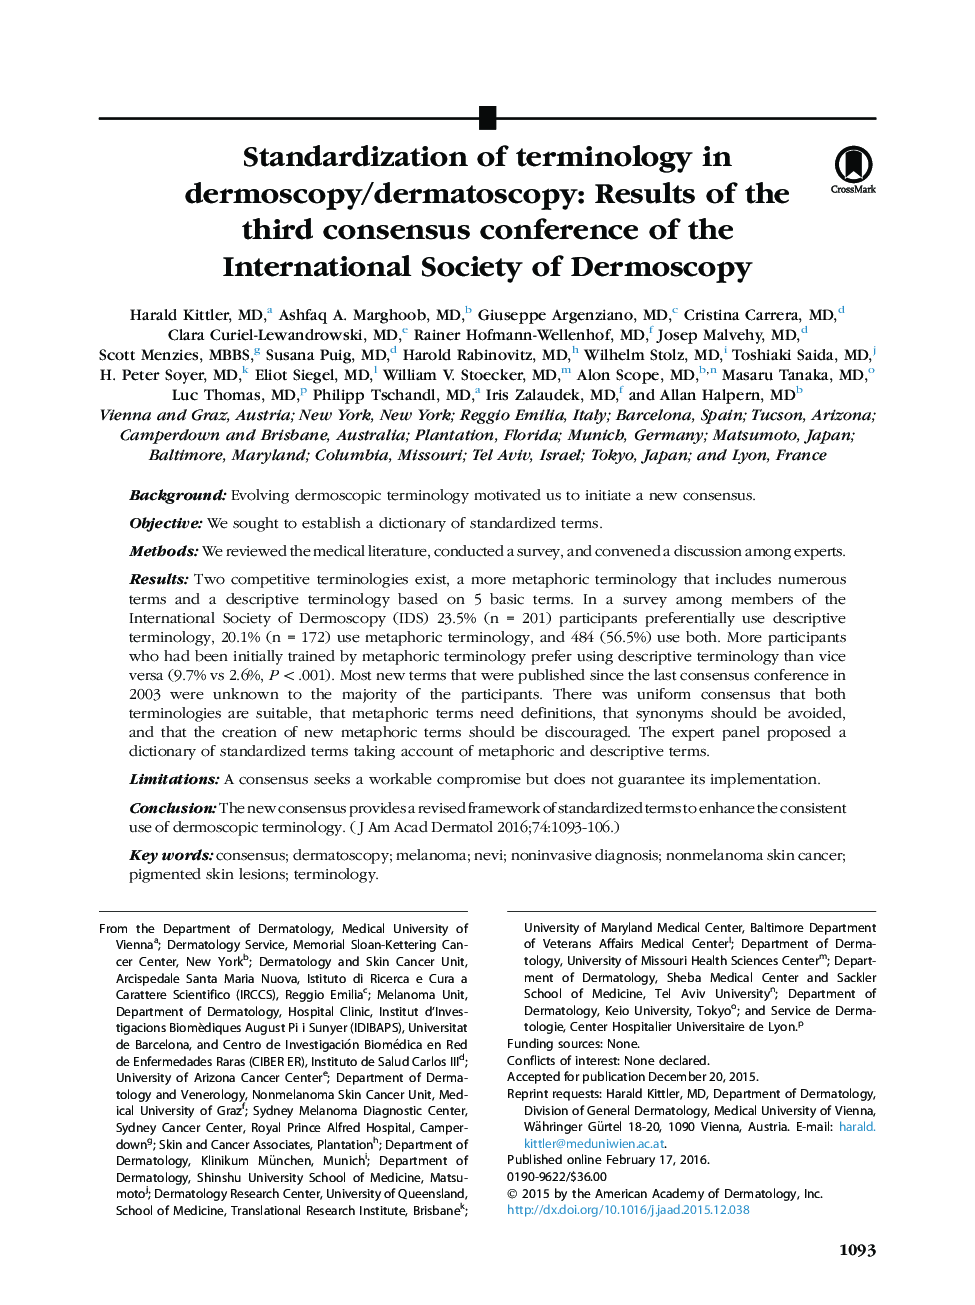 مقاله اصلی استاندارد اصطلاحات در پوست درماتوسکوپی / پوست درماتوسکوپی: نتایج سومین کنفرانس انجمن بین المللی پوست درماتوسکوپی 